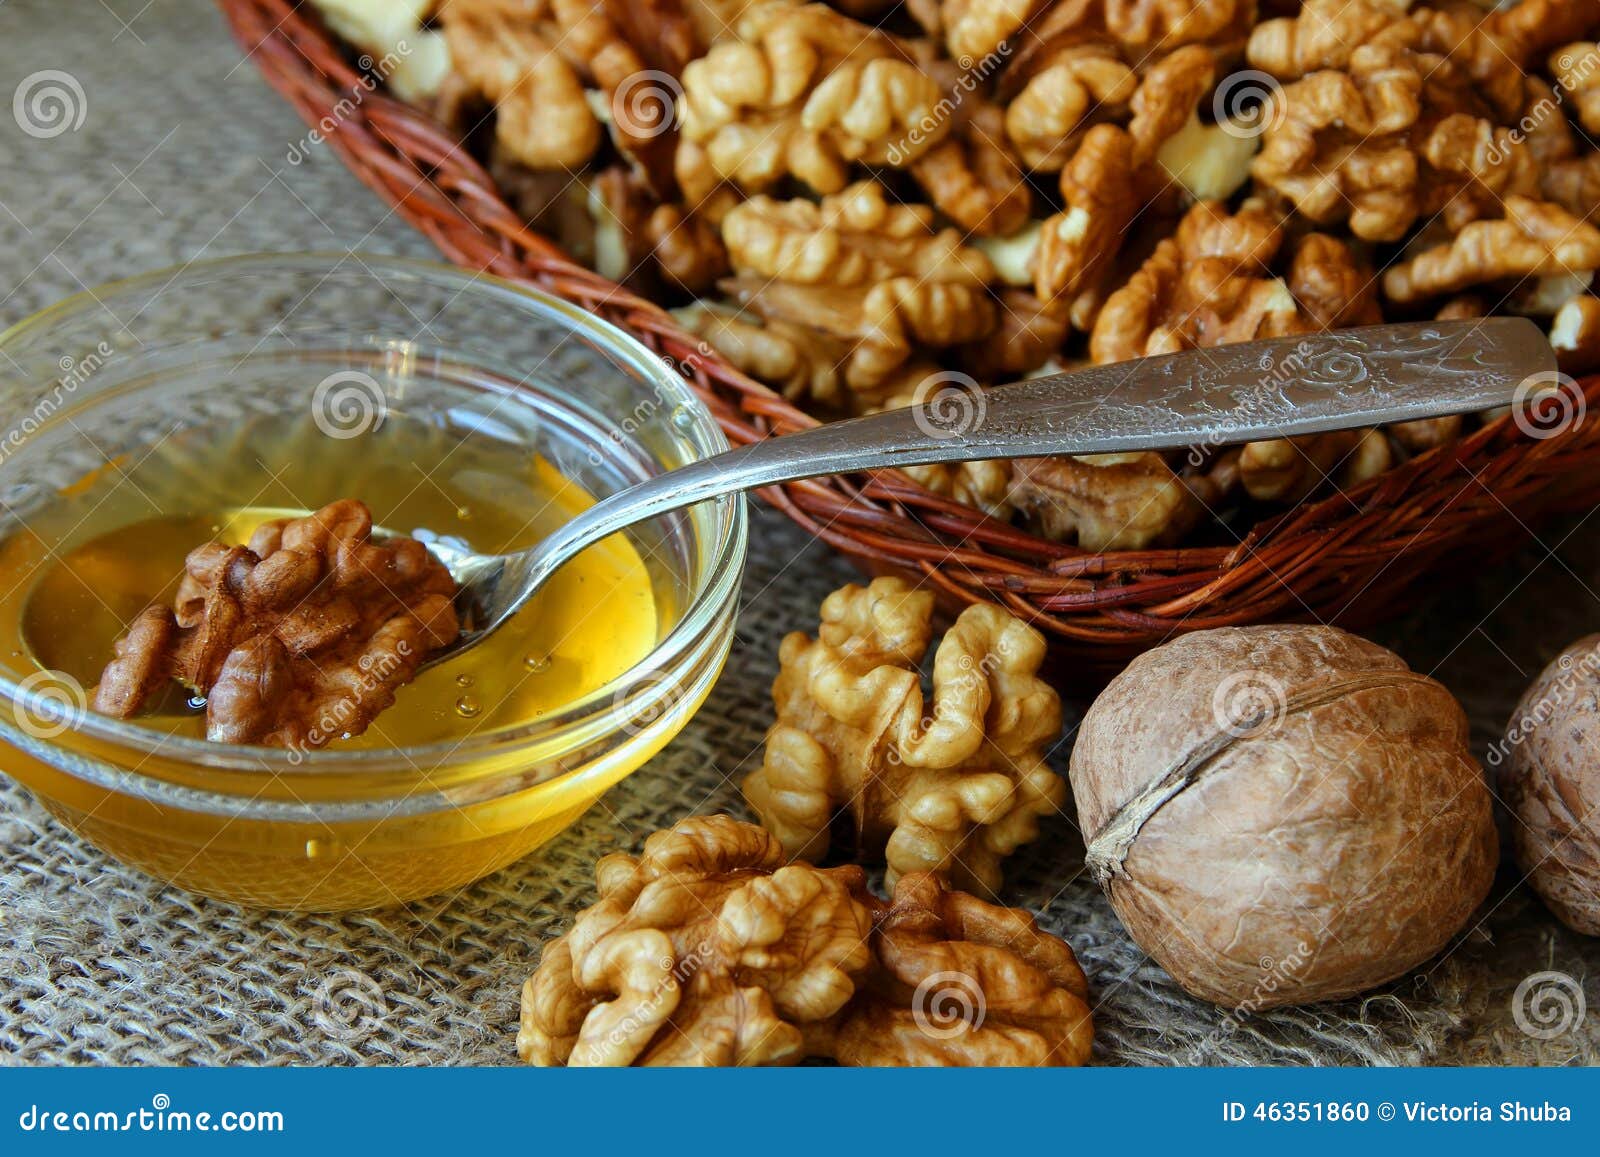 Орехи на голодный желудок. Мед с орехами. Грецкий орех с мёдом. Греческий орех с медом. Мед с орехами и семечками.